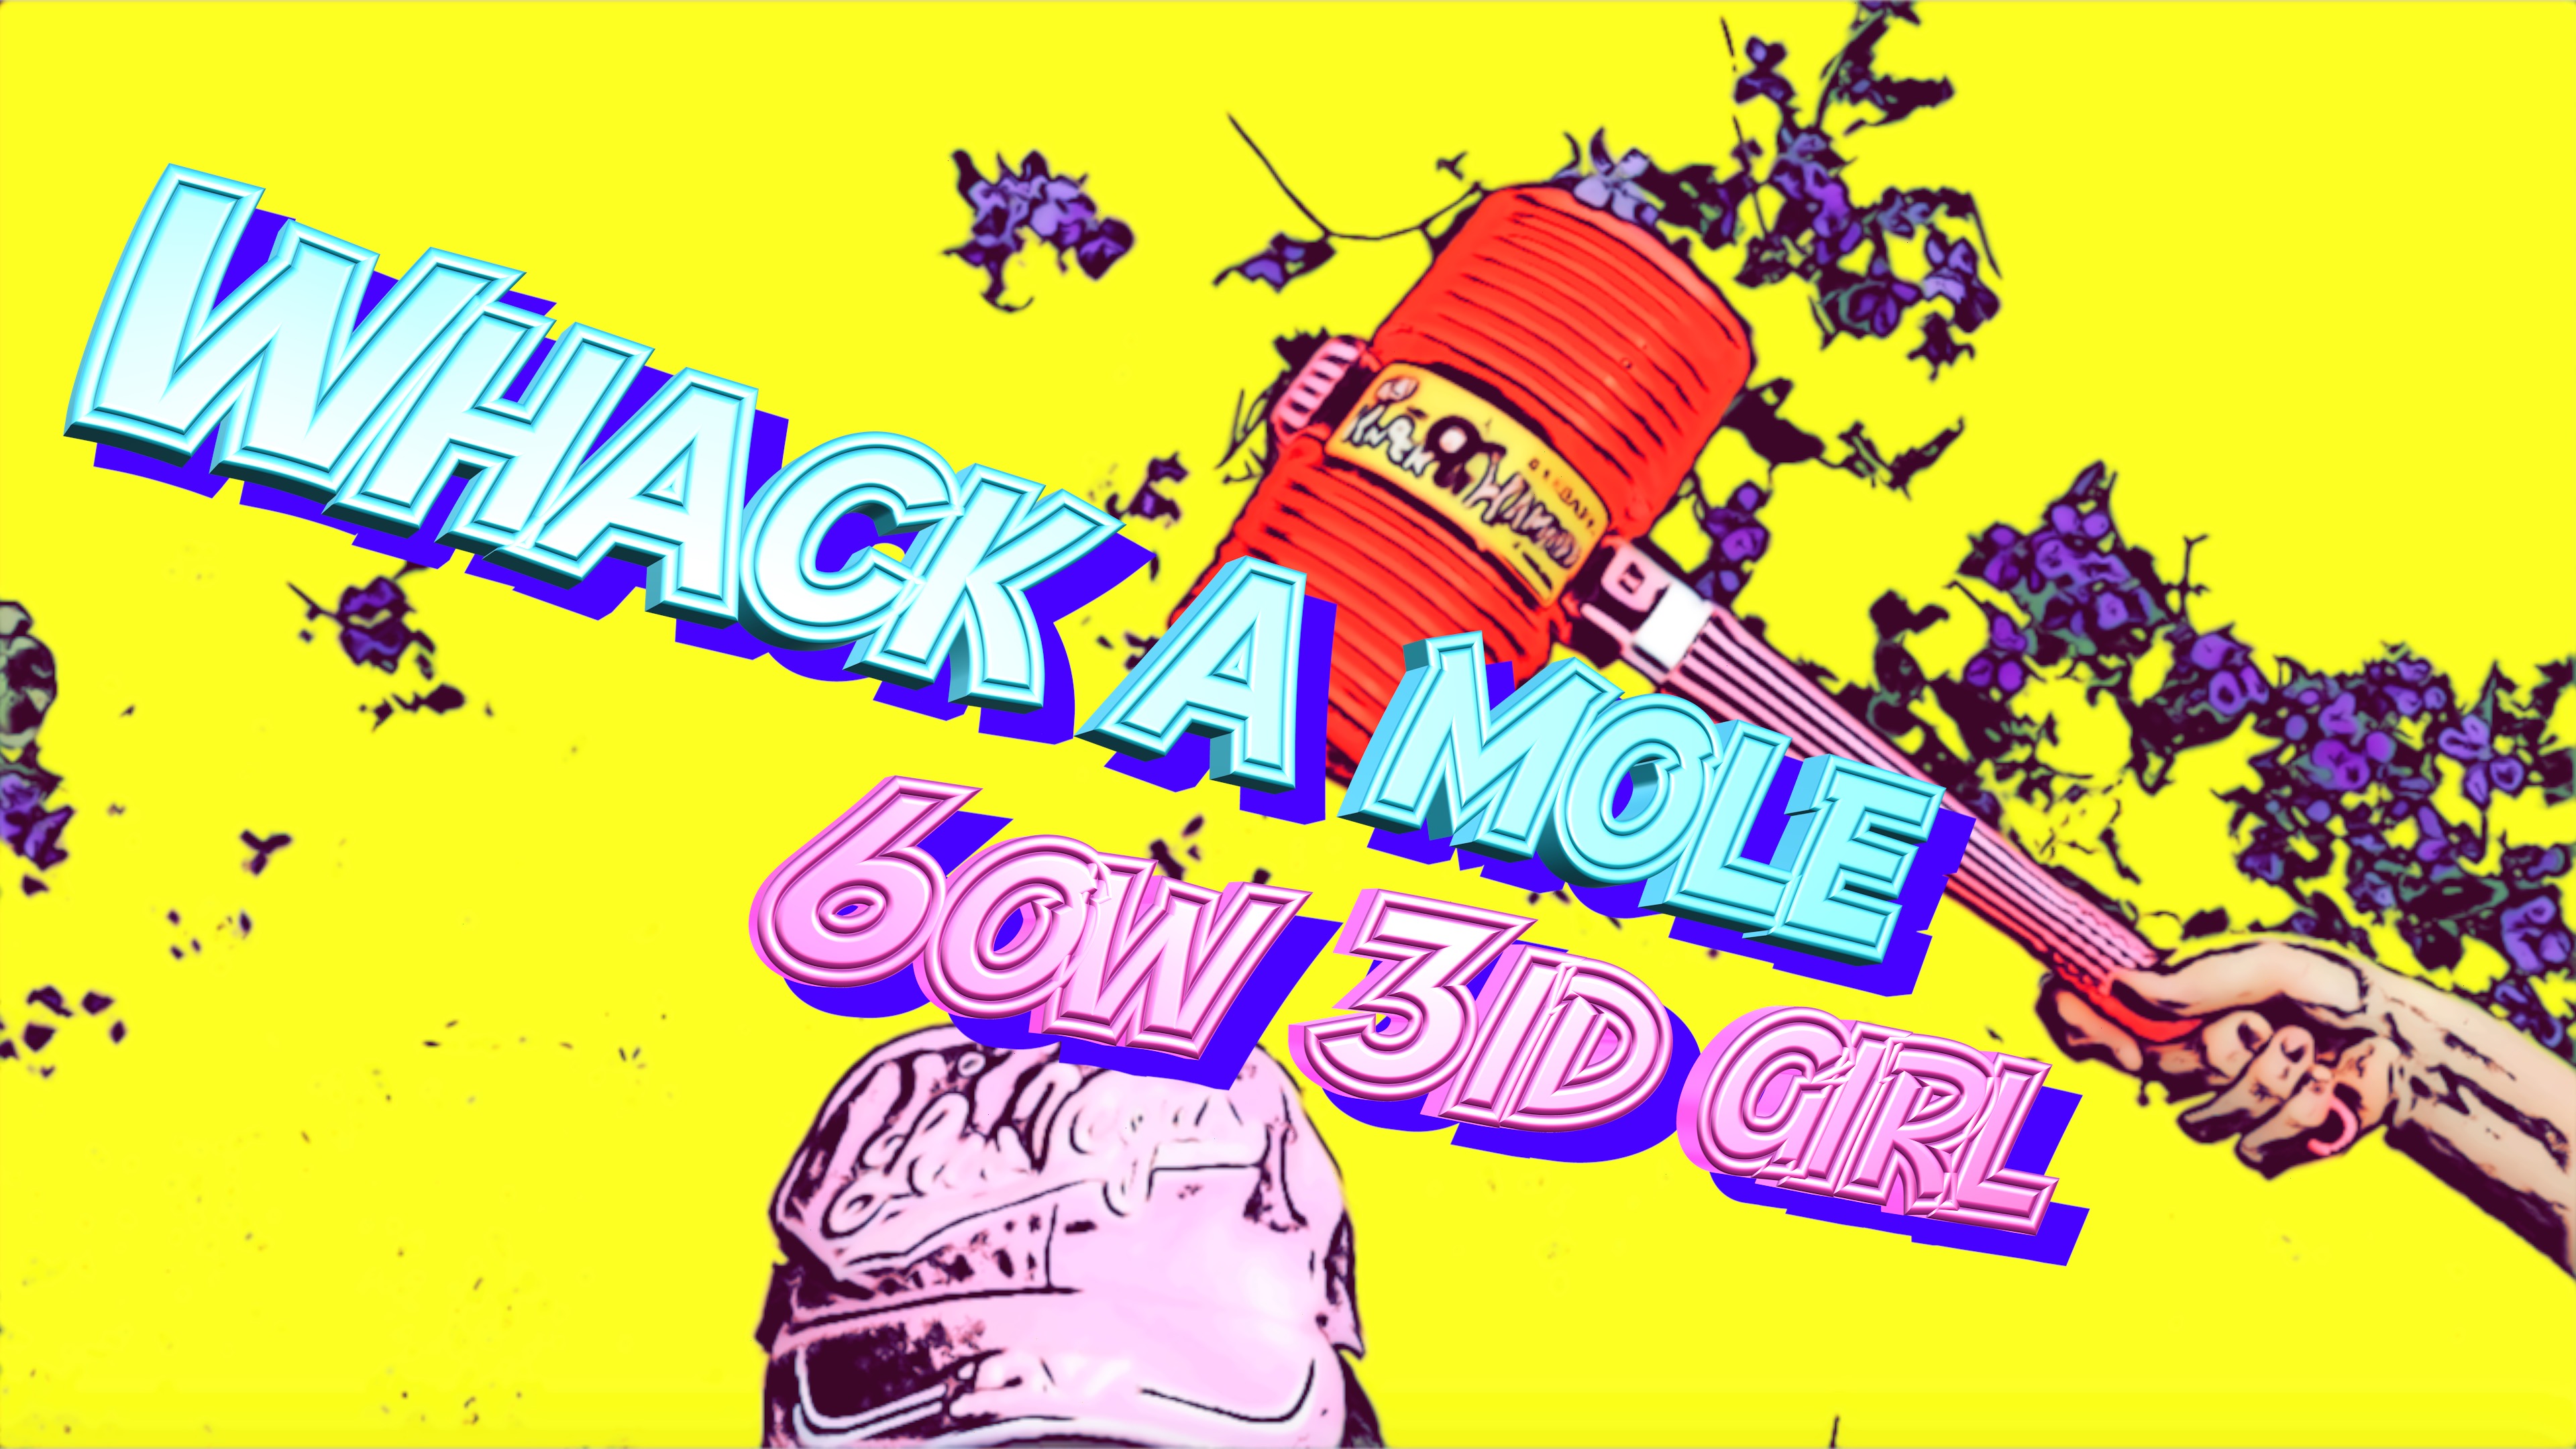 Whack a mole